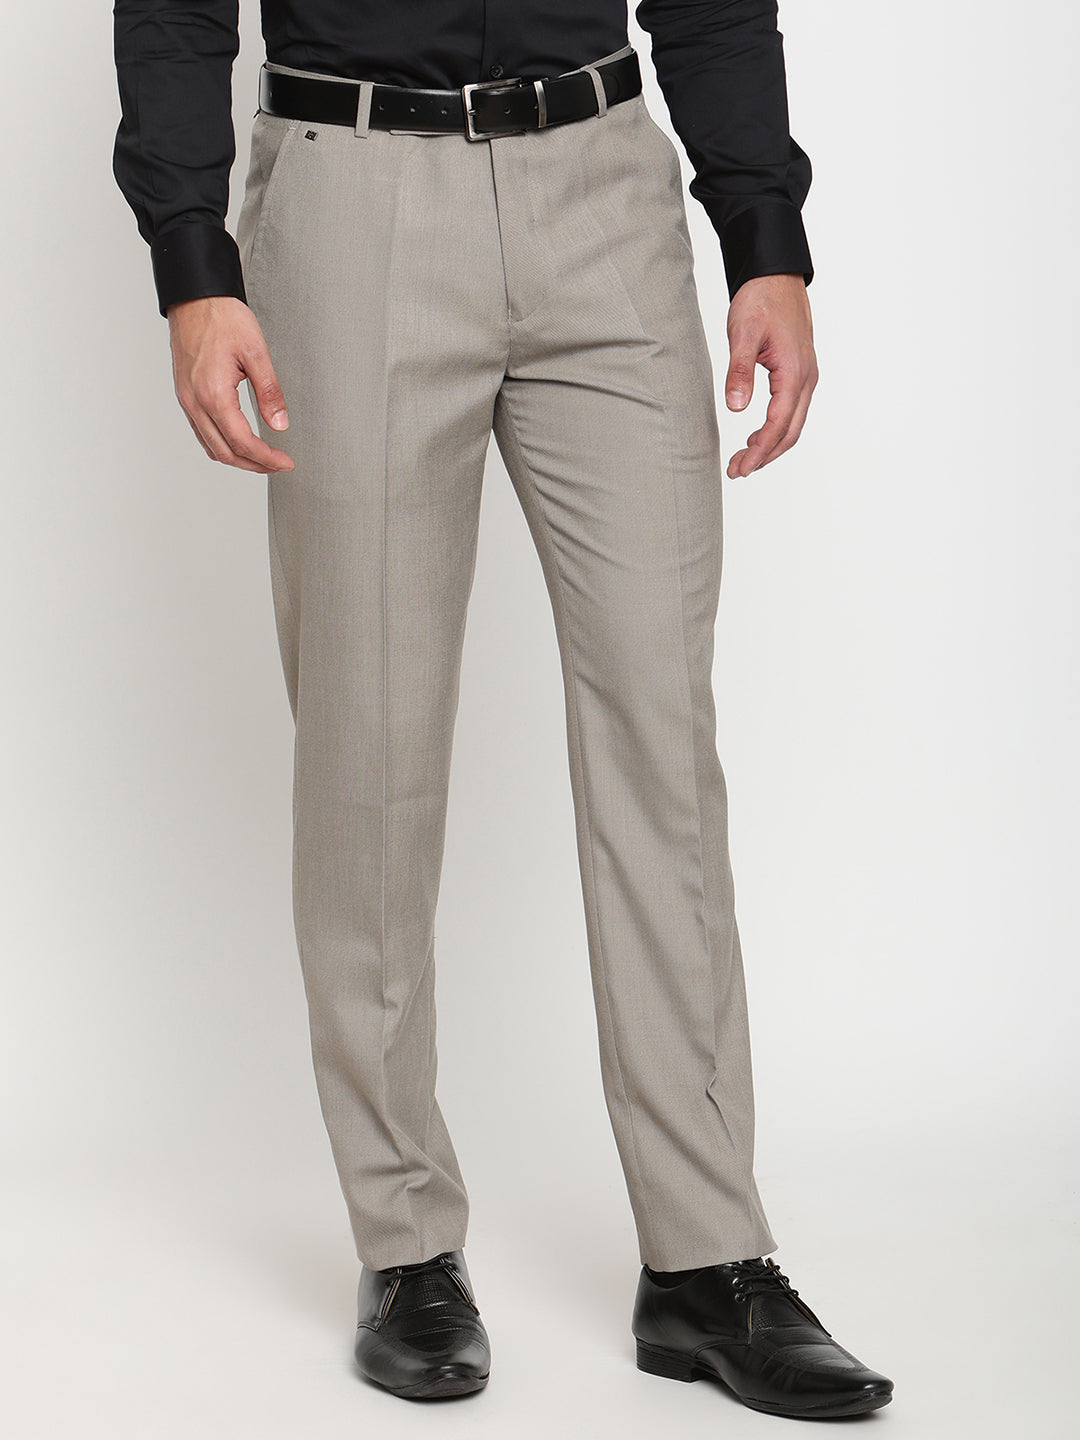 Buy Beige Trousers  Pants for Men by RAYMOND Online  Ajiocom